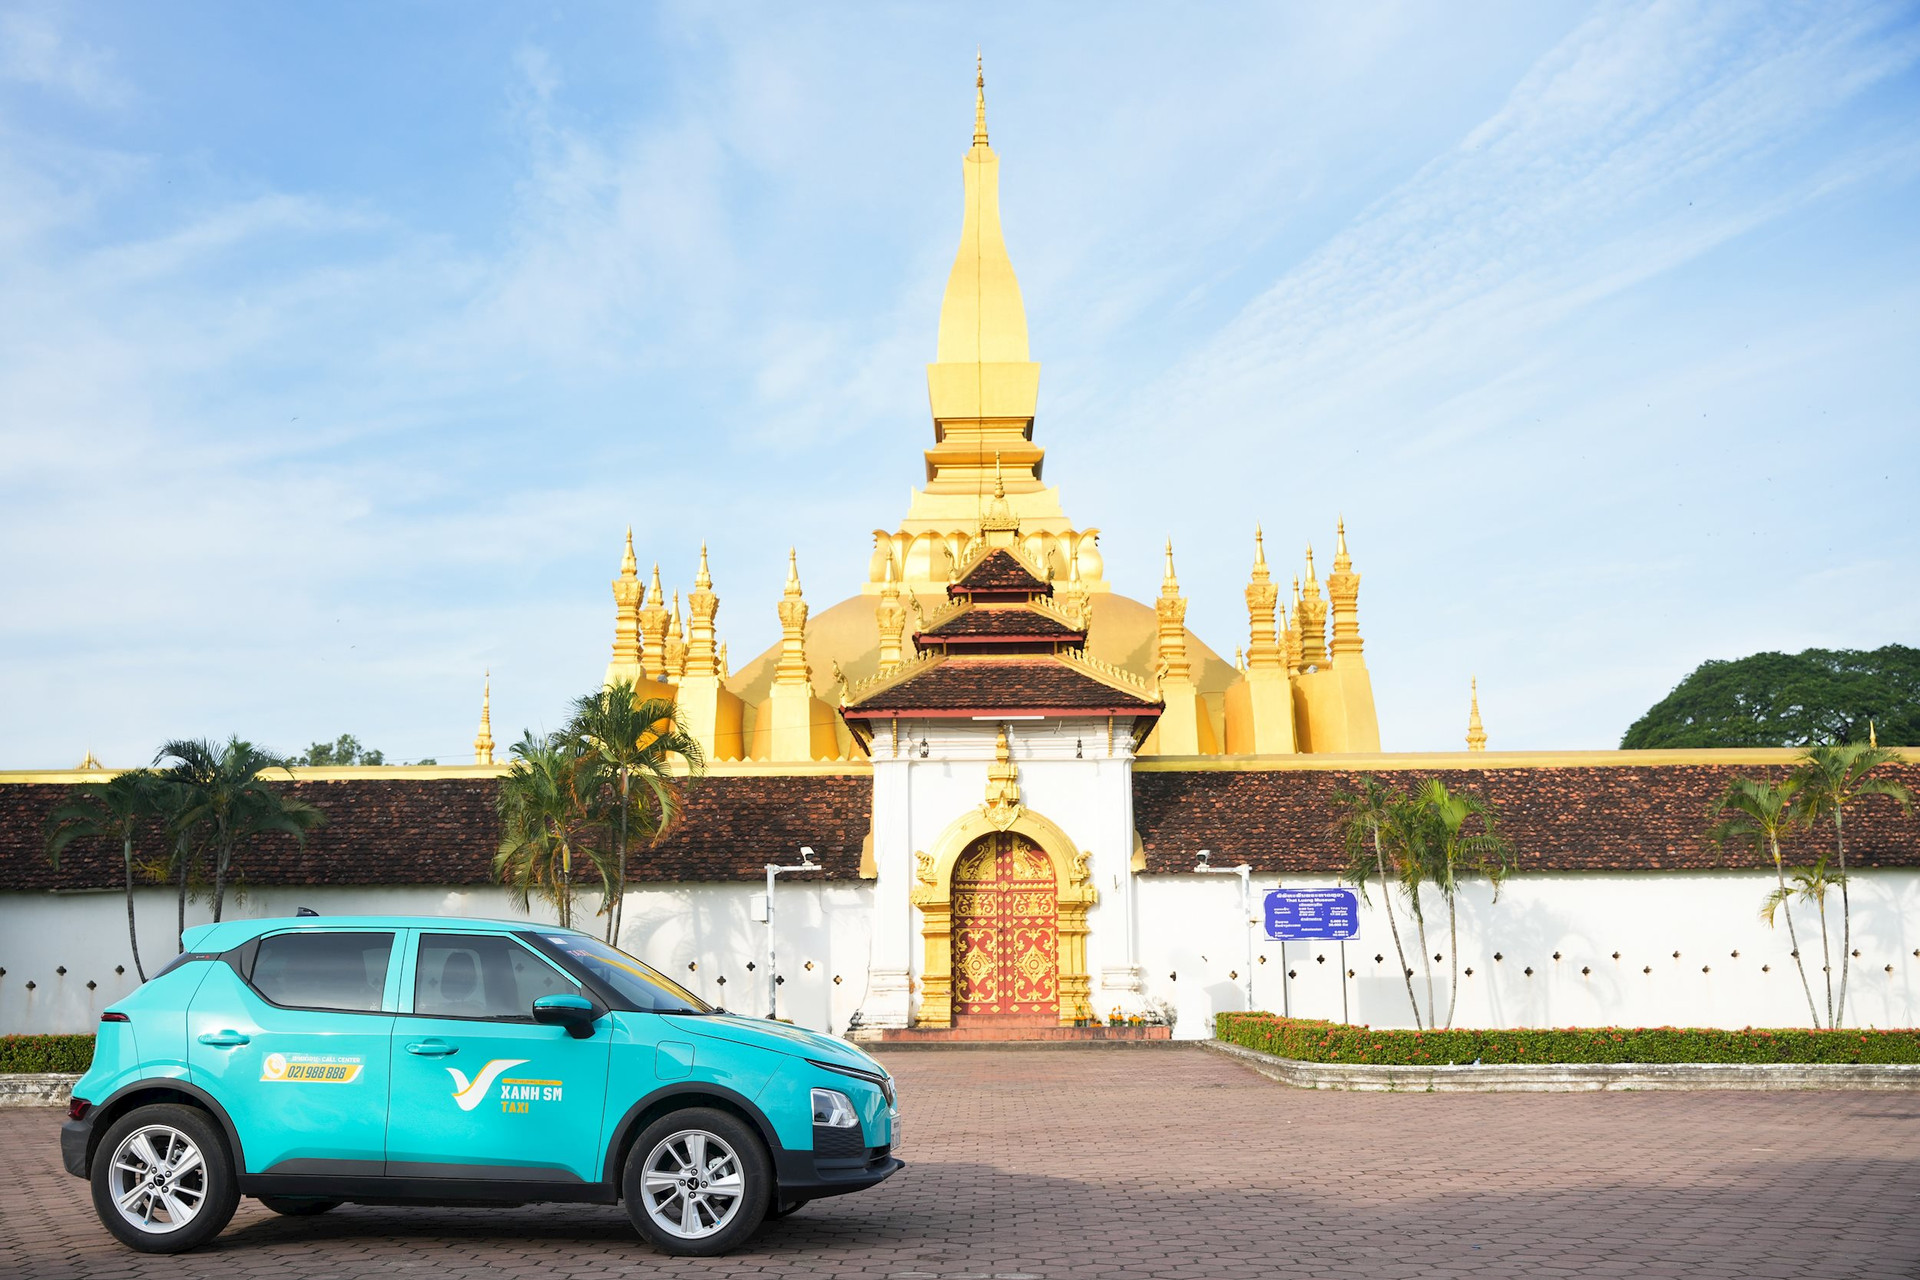 Taxi của tỷ phú Phạm Nhật Vượng chính thức hoạt động tại Lào, dự kiến nâng lên 1.000 xe